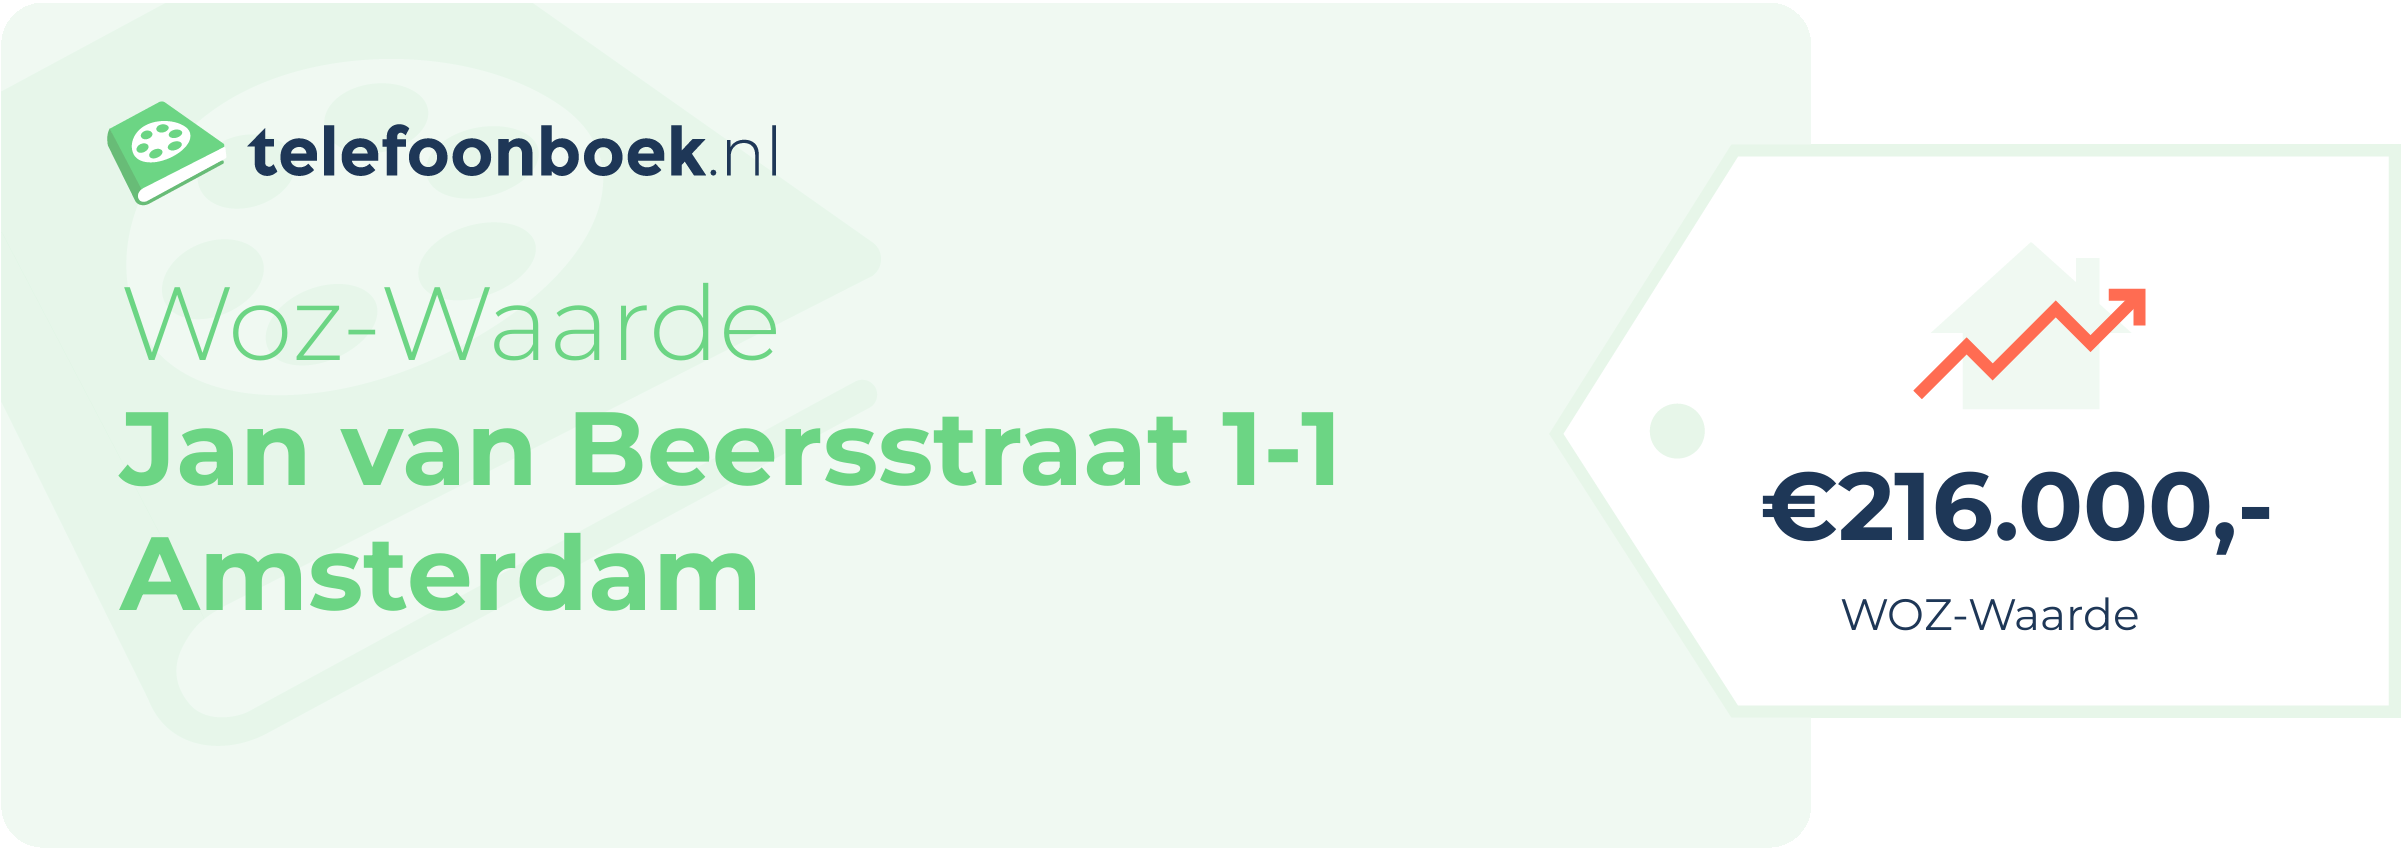 WOZ-waarde Jan Van Beersstraat 1-1 Amsterdam